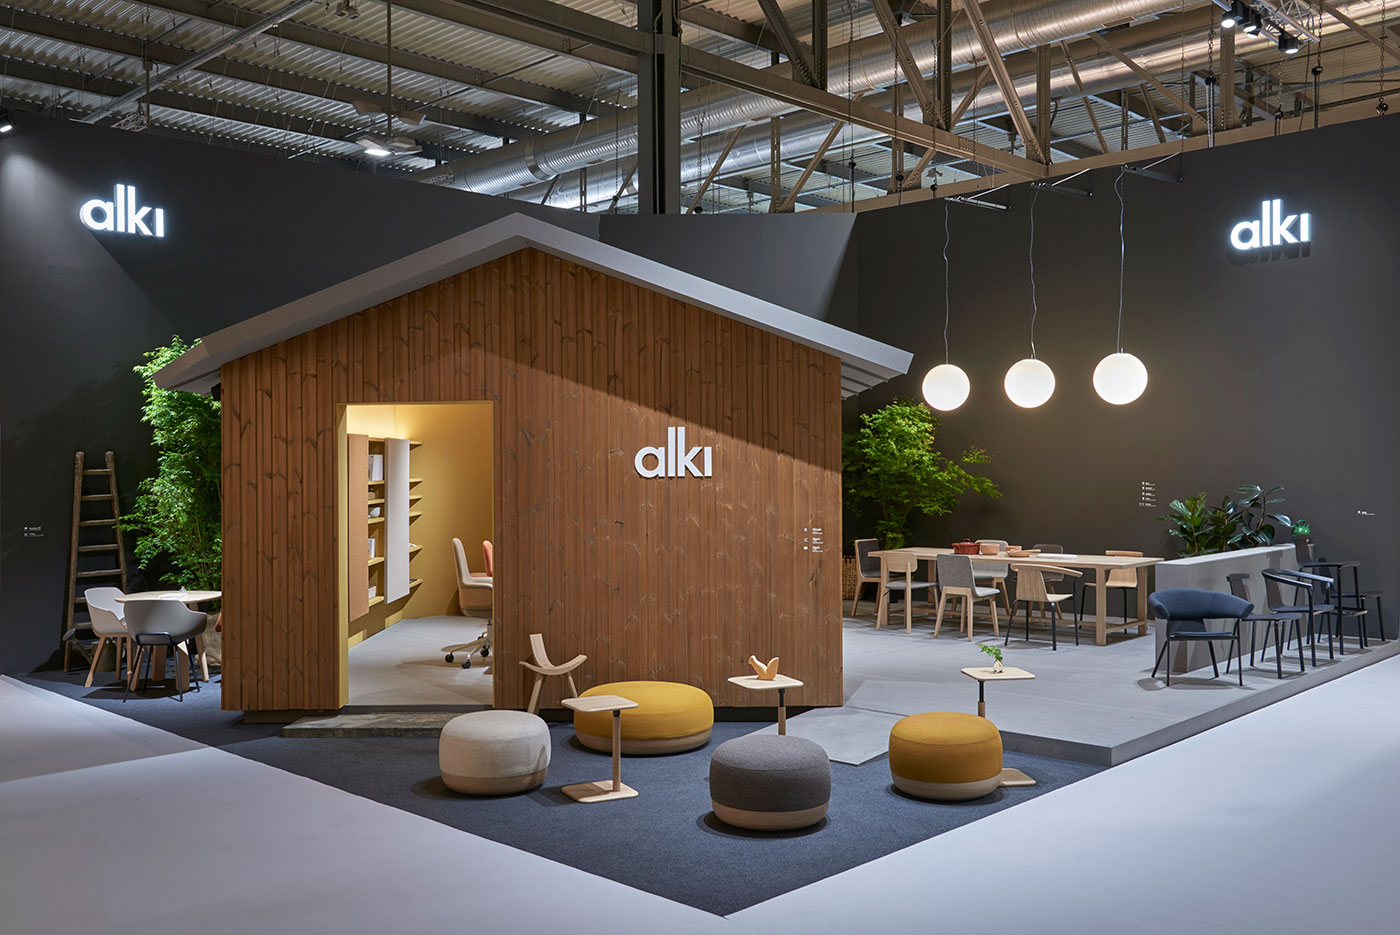 Stand design for Alki during the Milan Furniture Fair, by Iratzoki & Lizaso